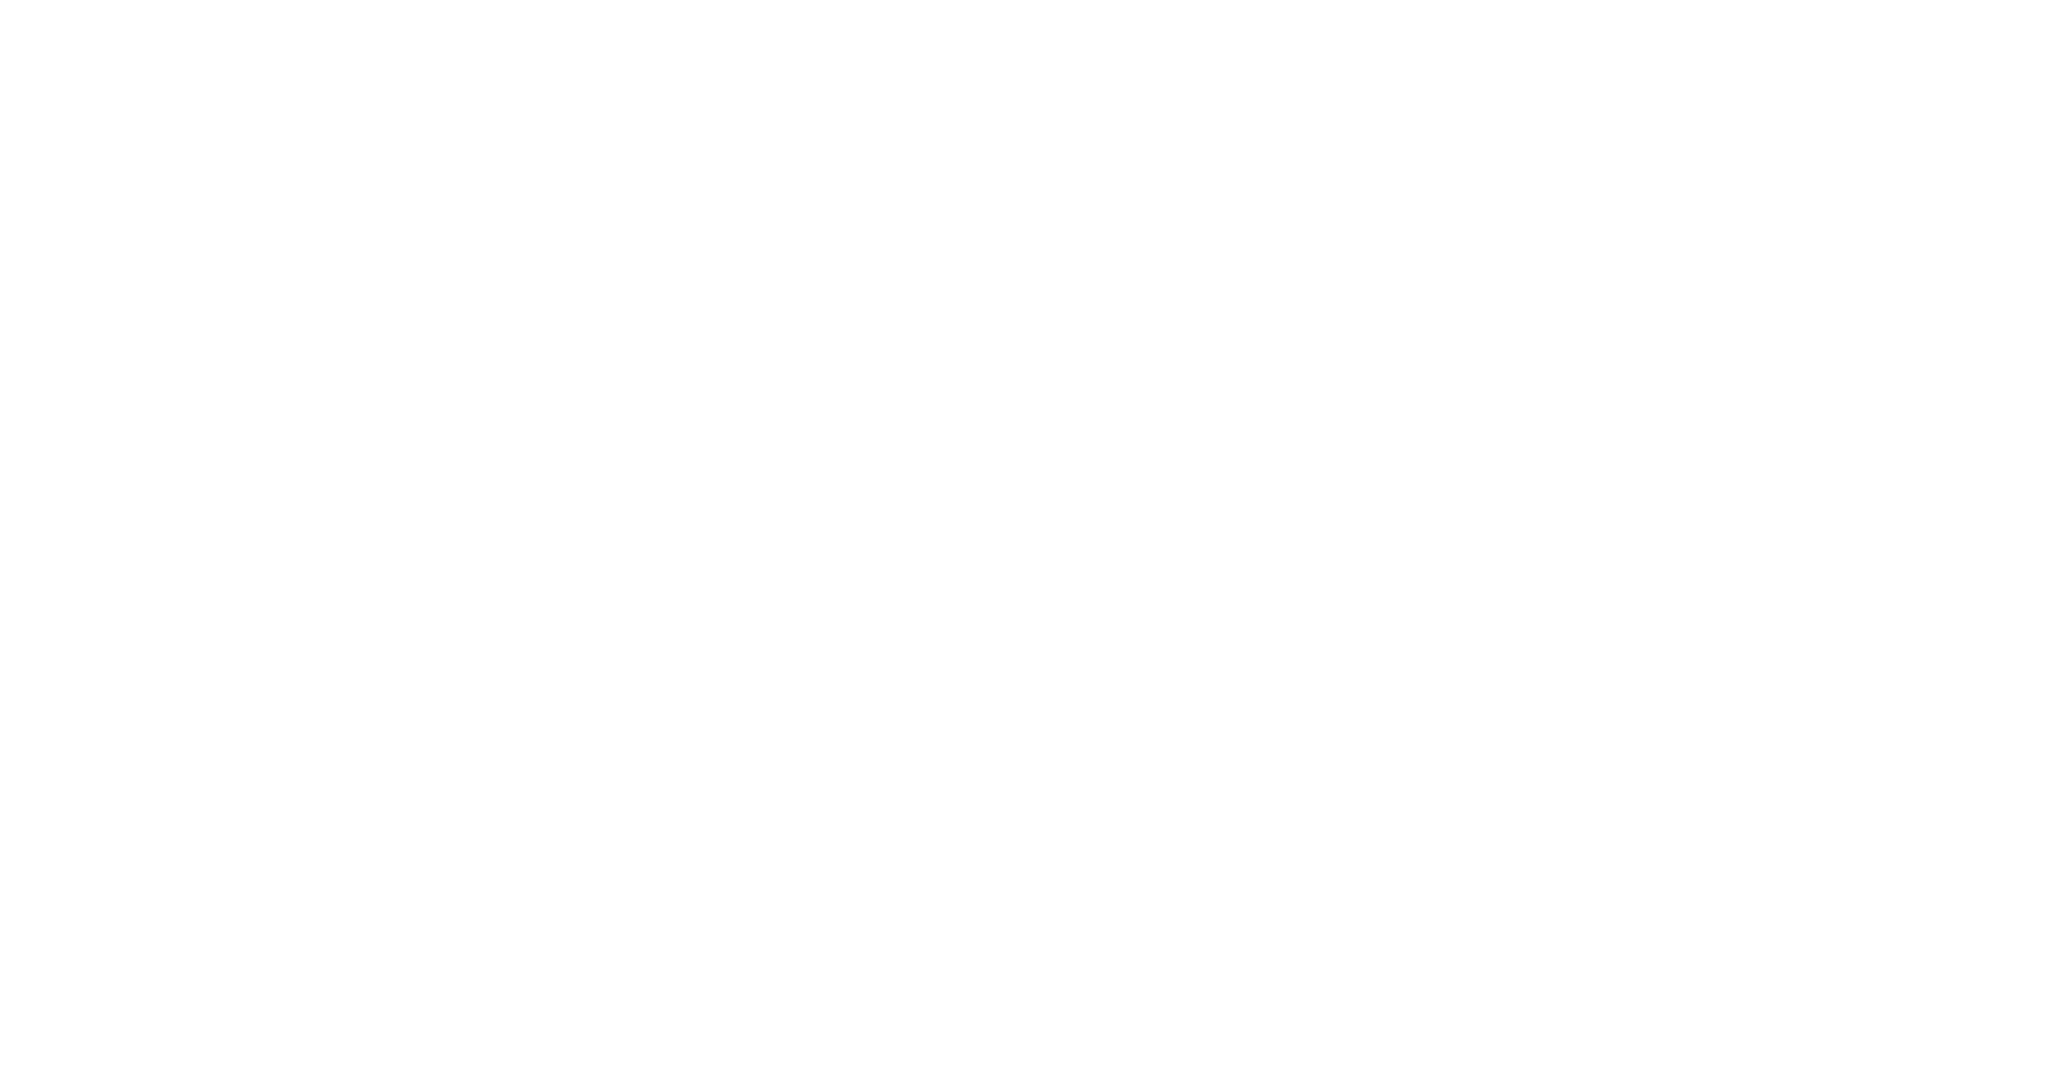 www.walder-stadtsaal.de